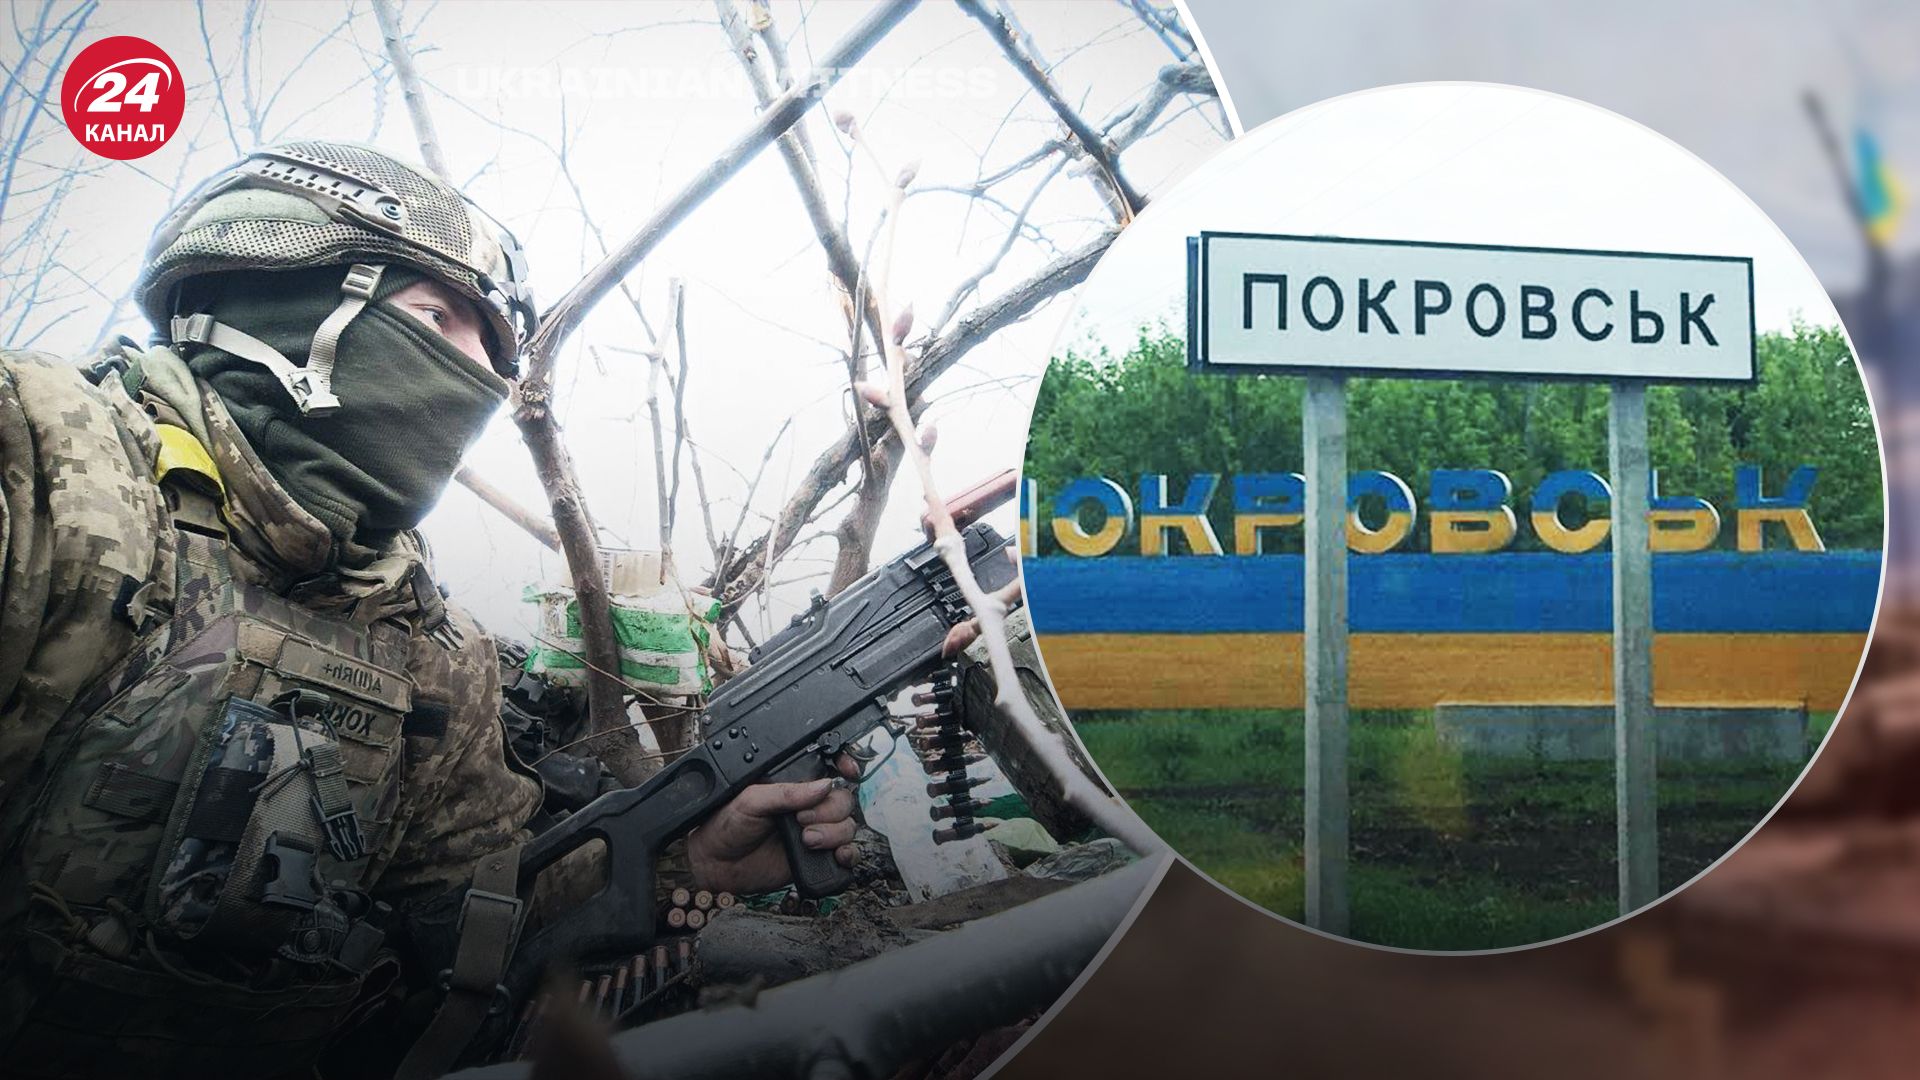 Сержант "Хоккей" рассказал о продвижении россиян в Донецкой области